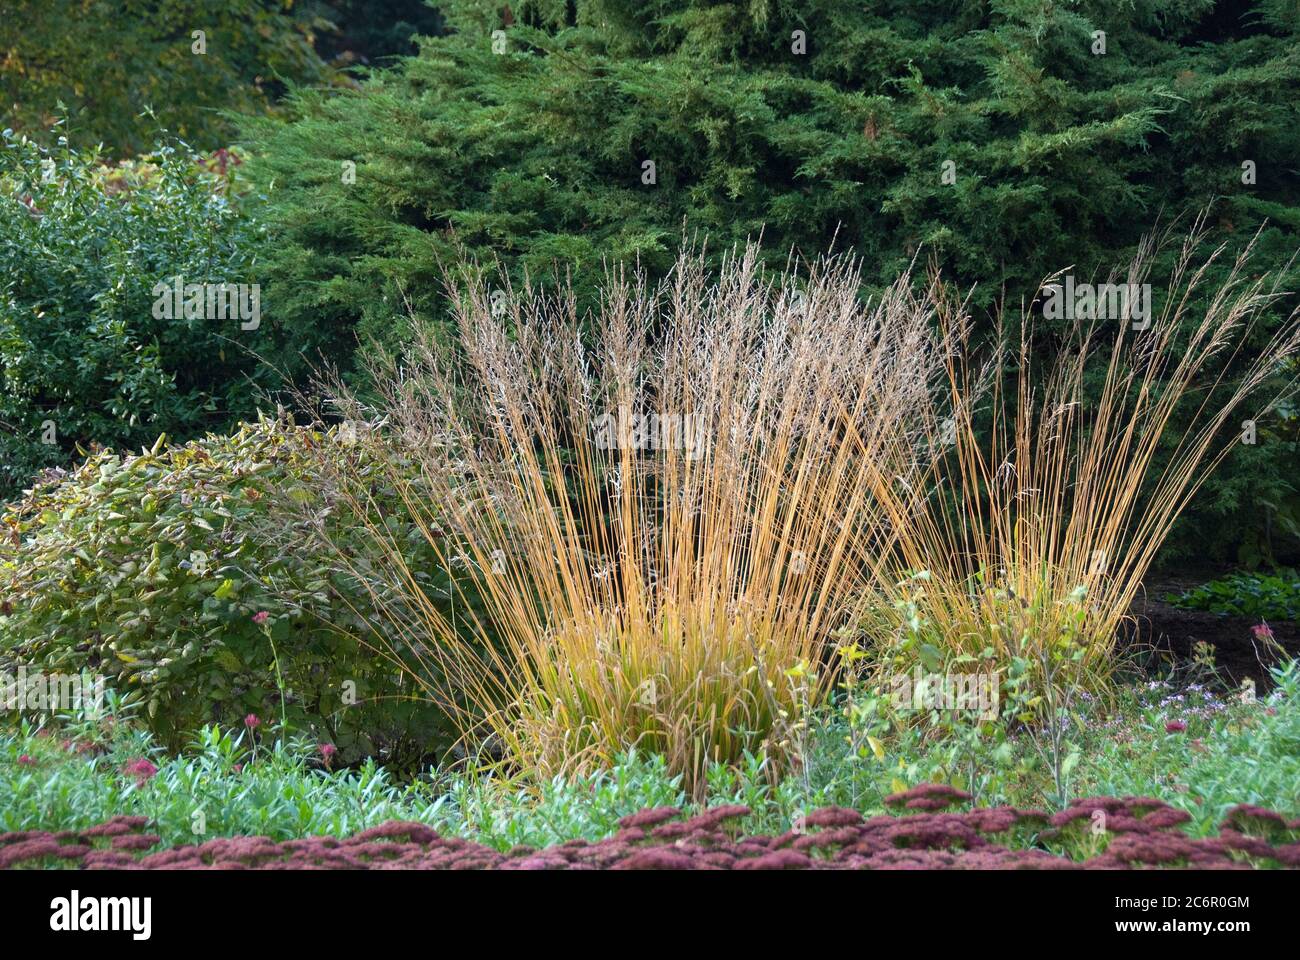 Reitgras Calamagrostis arundinacea, Fetthenne Sedum telephium, Reed grass Calamagrostis arundinacea, stonecrop Sedum telephium Stock Photo